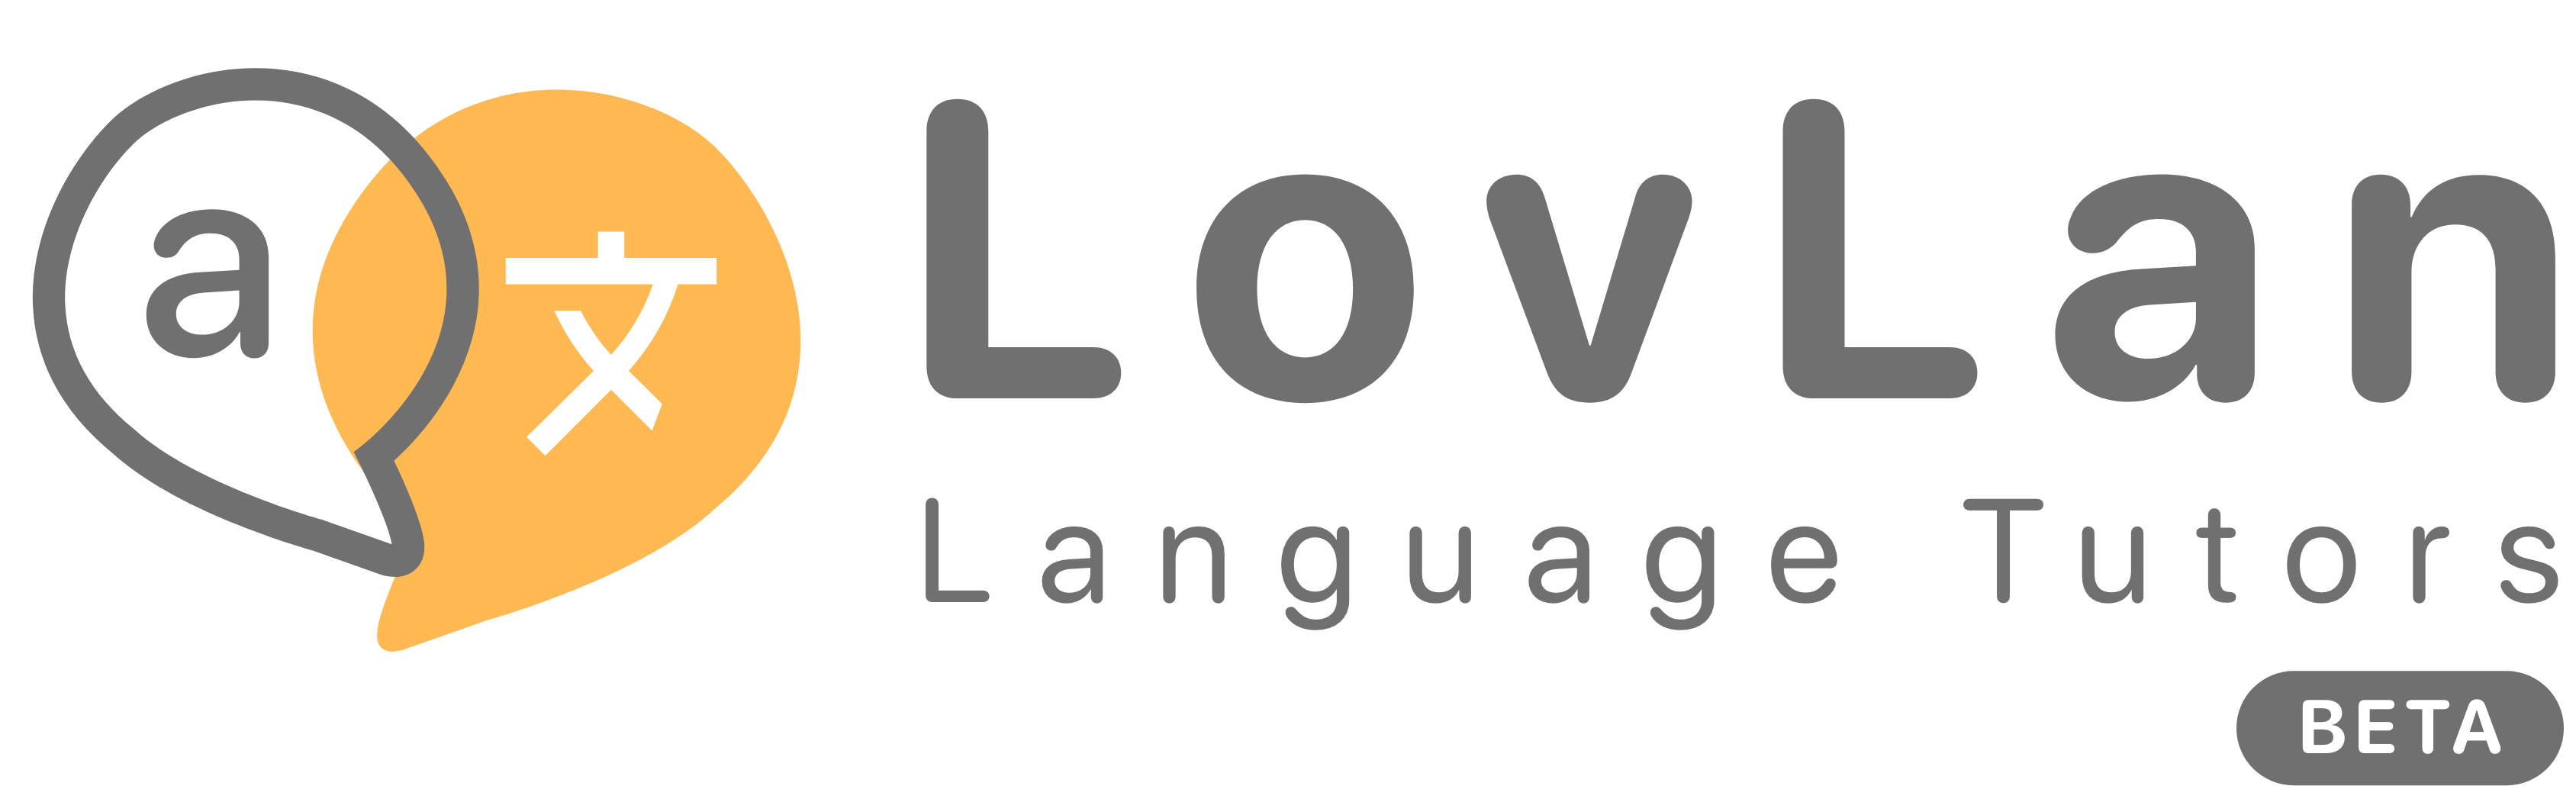 Lovlan logo